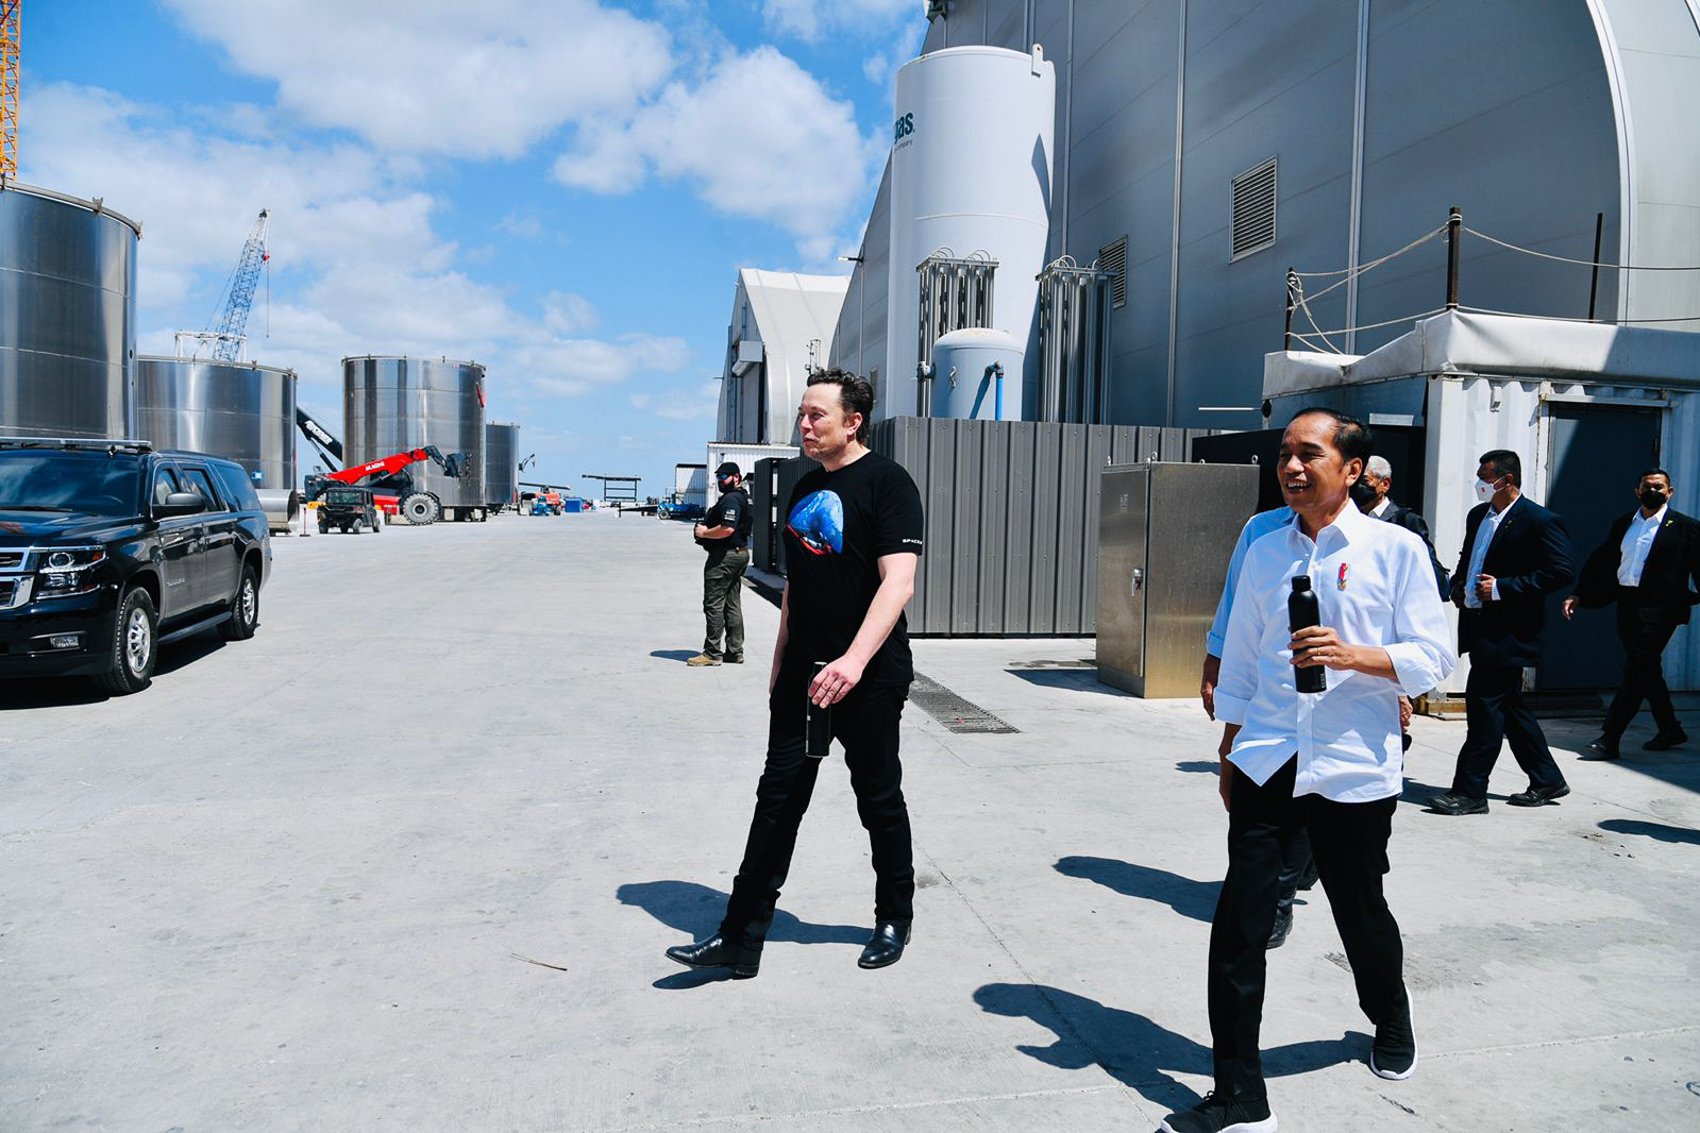 Presiden Joko Widodo berjalan dengan Elon Musk di Gedung Stargate Space X, Boca Chica, Amerika Serikat, Sabtu (14/05/2022). Dalam kunjungannya ke Space X di Boca Chica, AS, Presiden Jokowi mengundang Elon Musk untuk datang ke Indonesia. Menjawab undangan tersebut, Elon Musk mengatakan berencana datang ke Indonesia pada bulan November tahun ini.